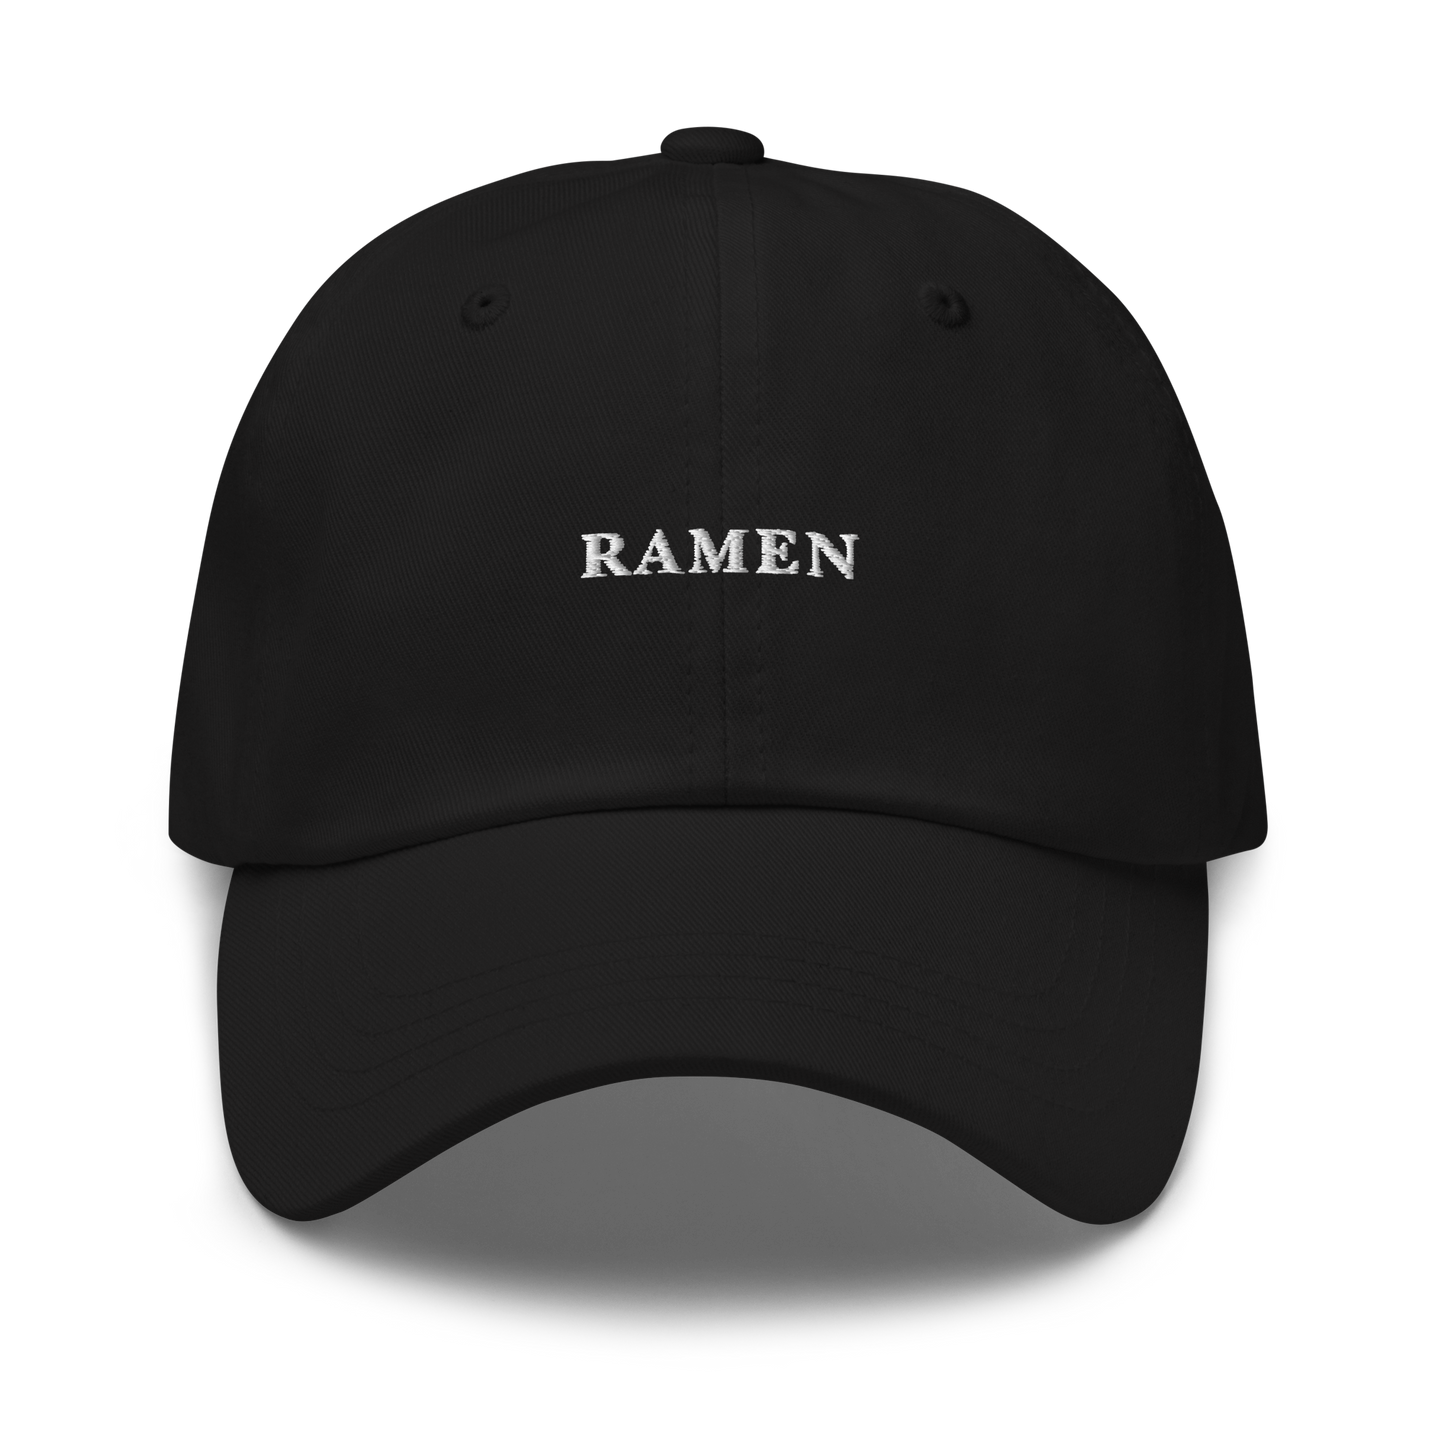 Ramen Embroidered Dad Hat